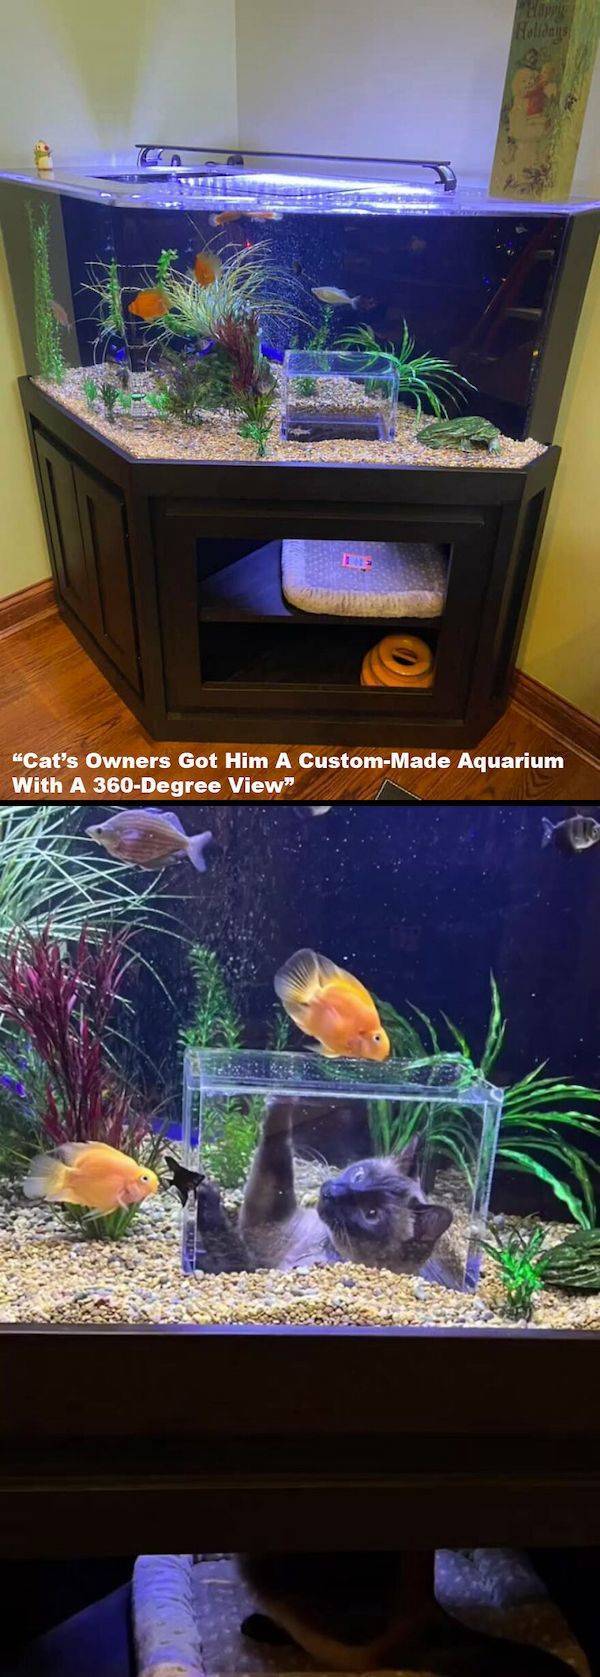 cool pics - aquarium - Holidays 1 "Cat's Owners Got Him A CustomMade Aquarium With A 360Degree View"